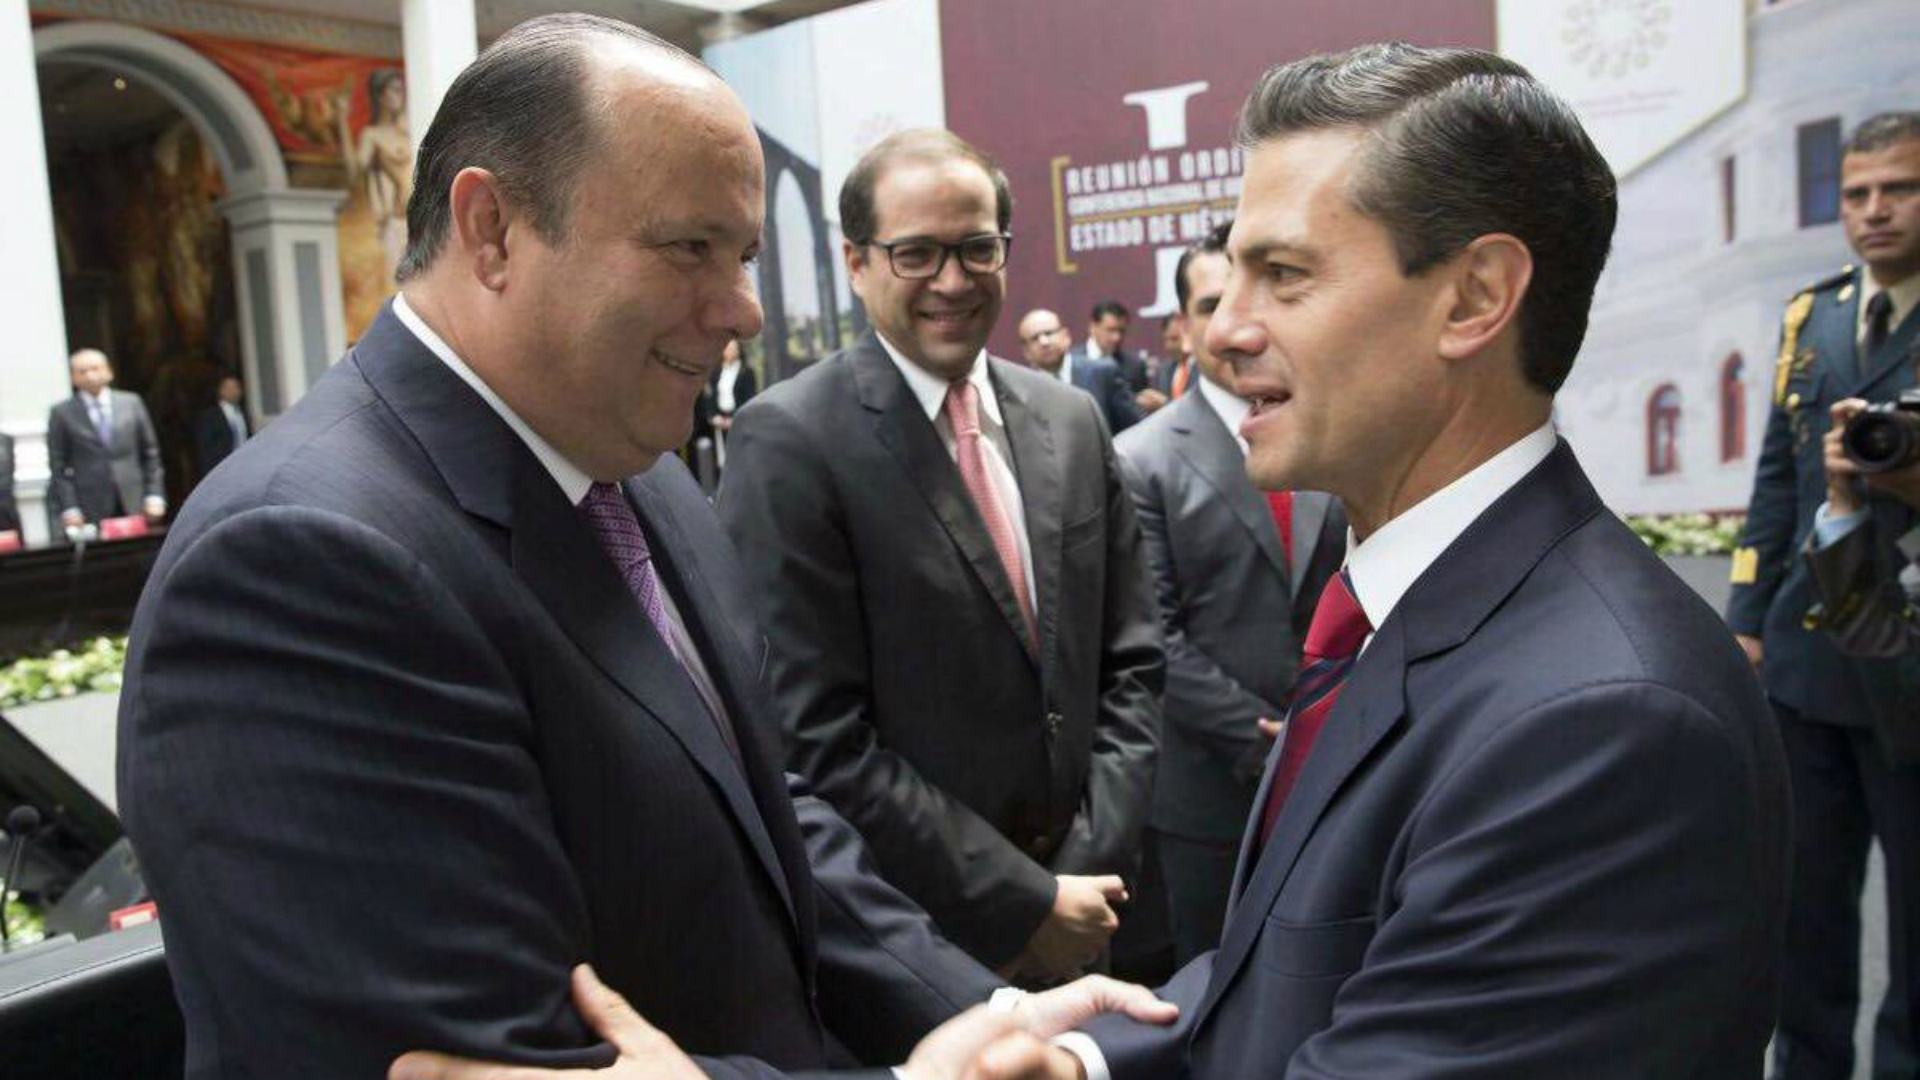 César Duarte, junto al presidente Enrique Peña Nieto. El ex gobernador de Chihuahua huyó del país el año pasado. (Foto: Cuartoscuro)